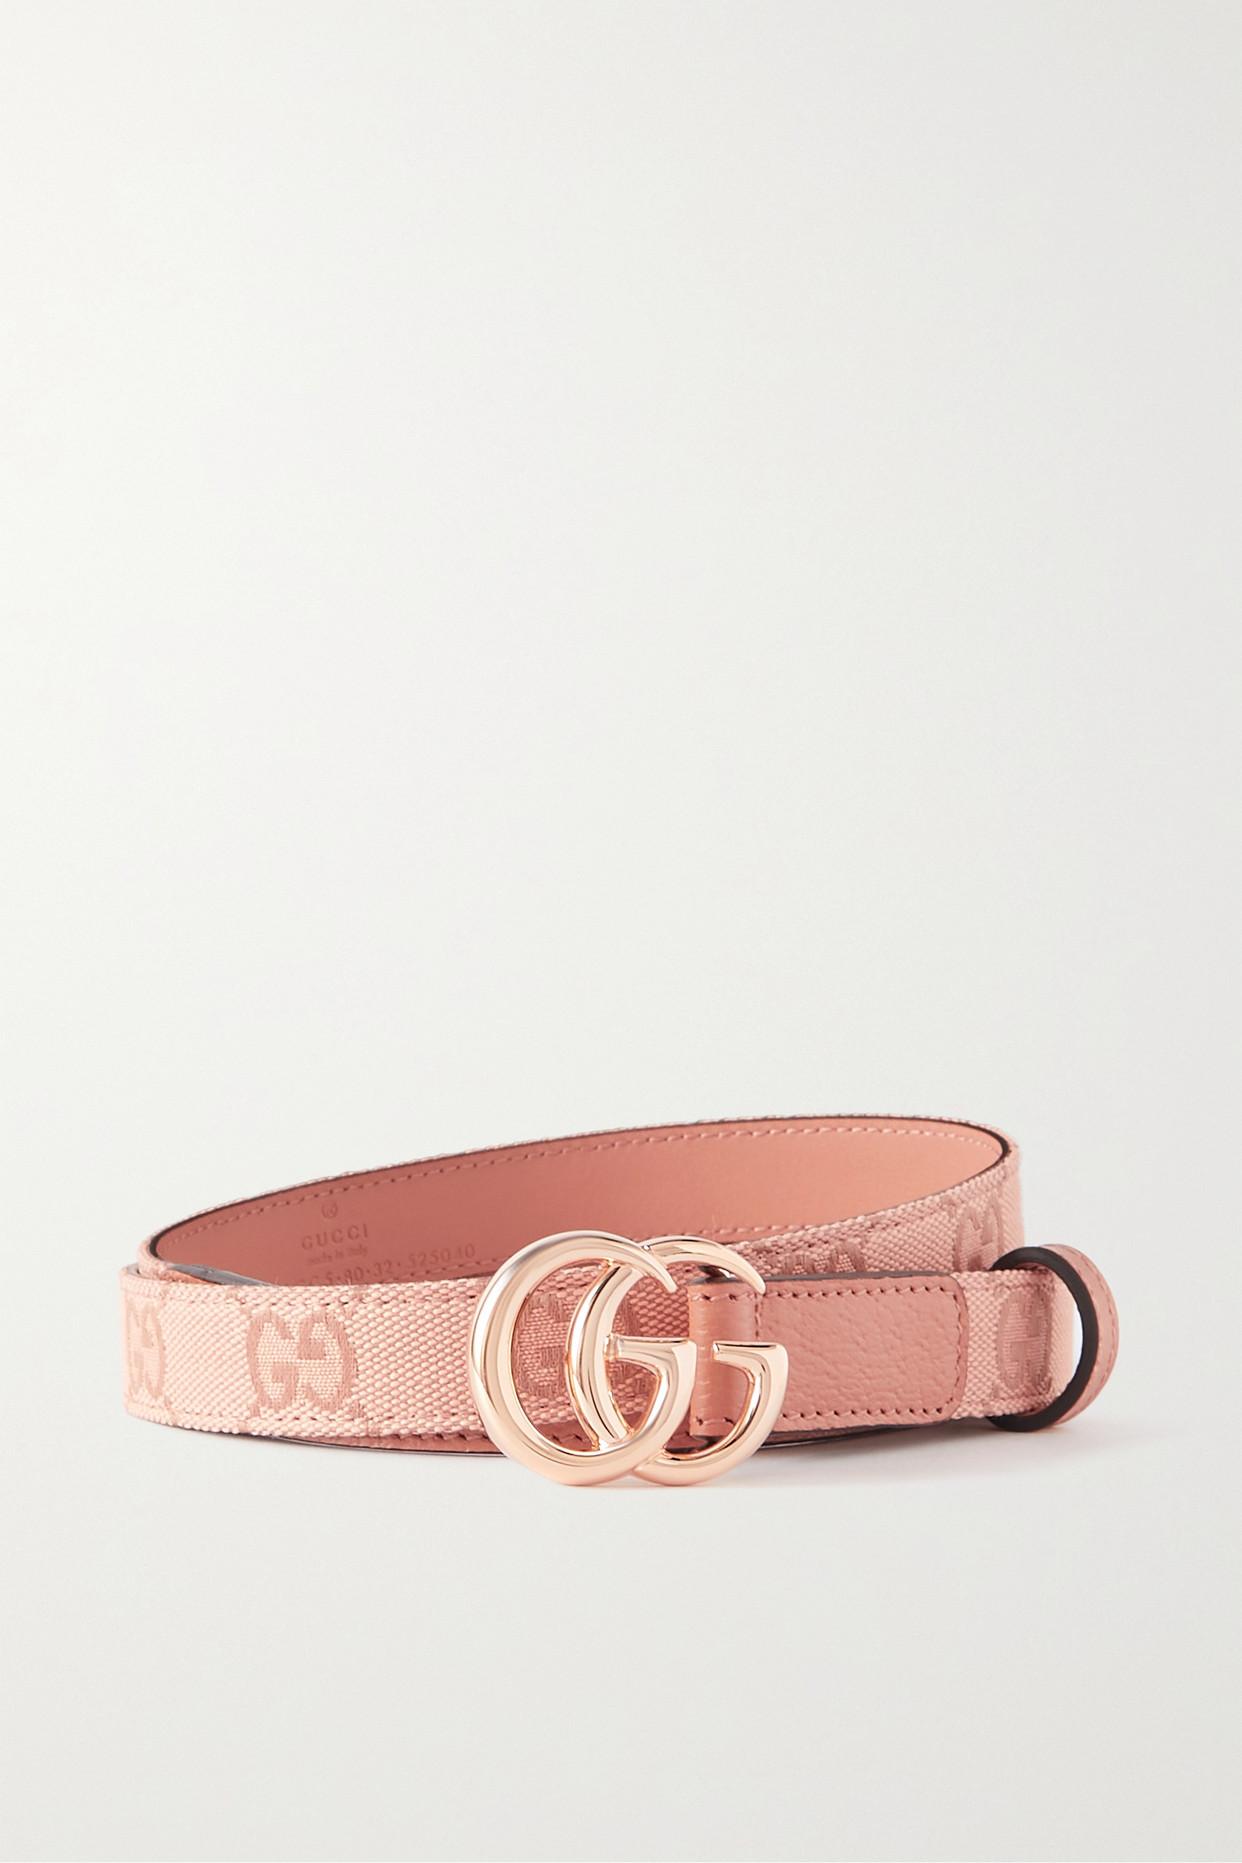 Gucci - Blondie Monogram Belt - Men - Leather/Canvas - 95 - Neutrals